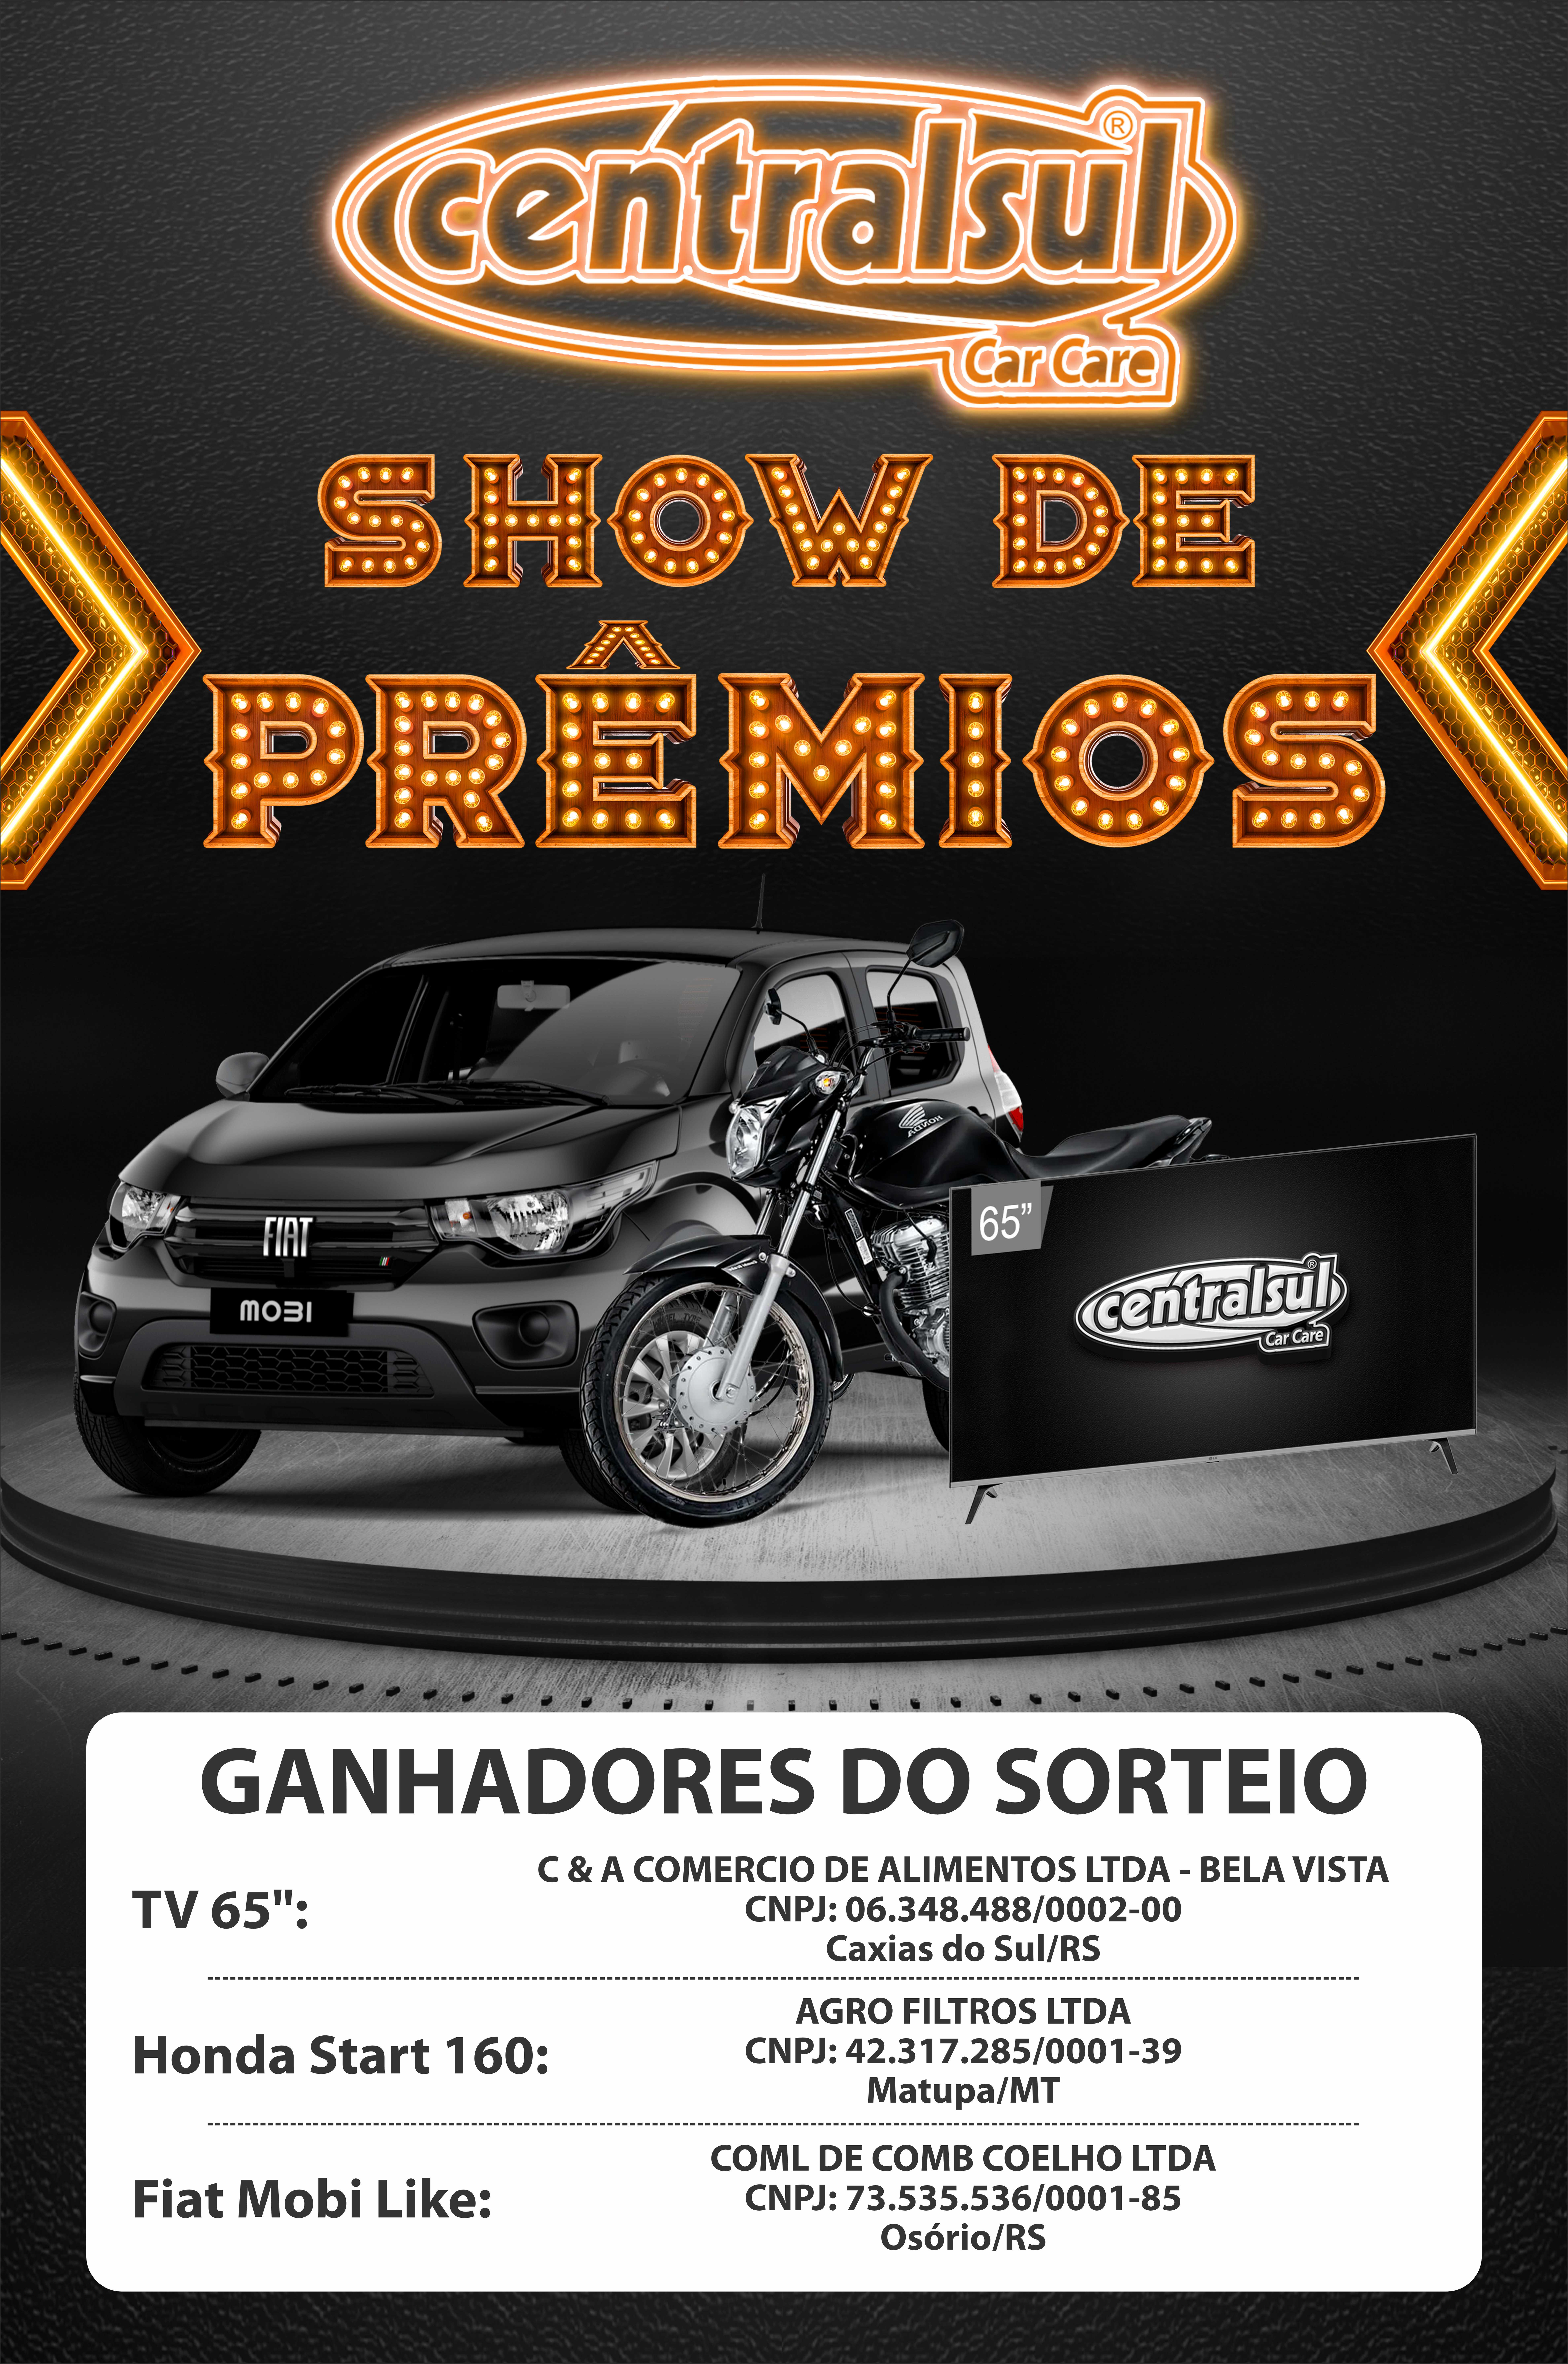 Show de Prêmios Ganhadores - Centralsul